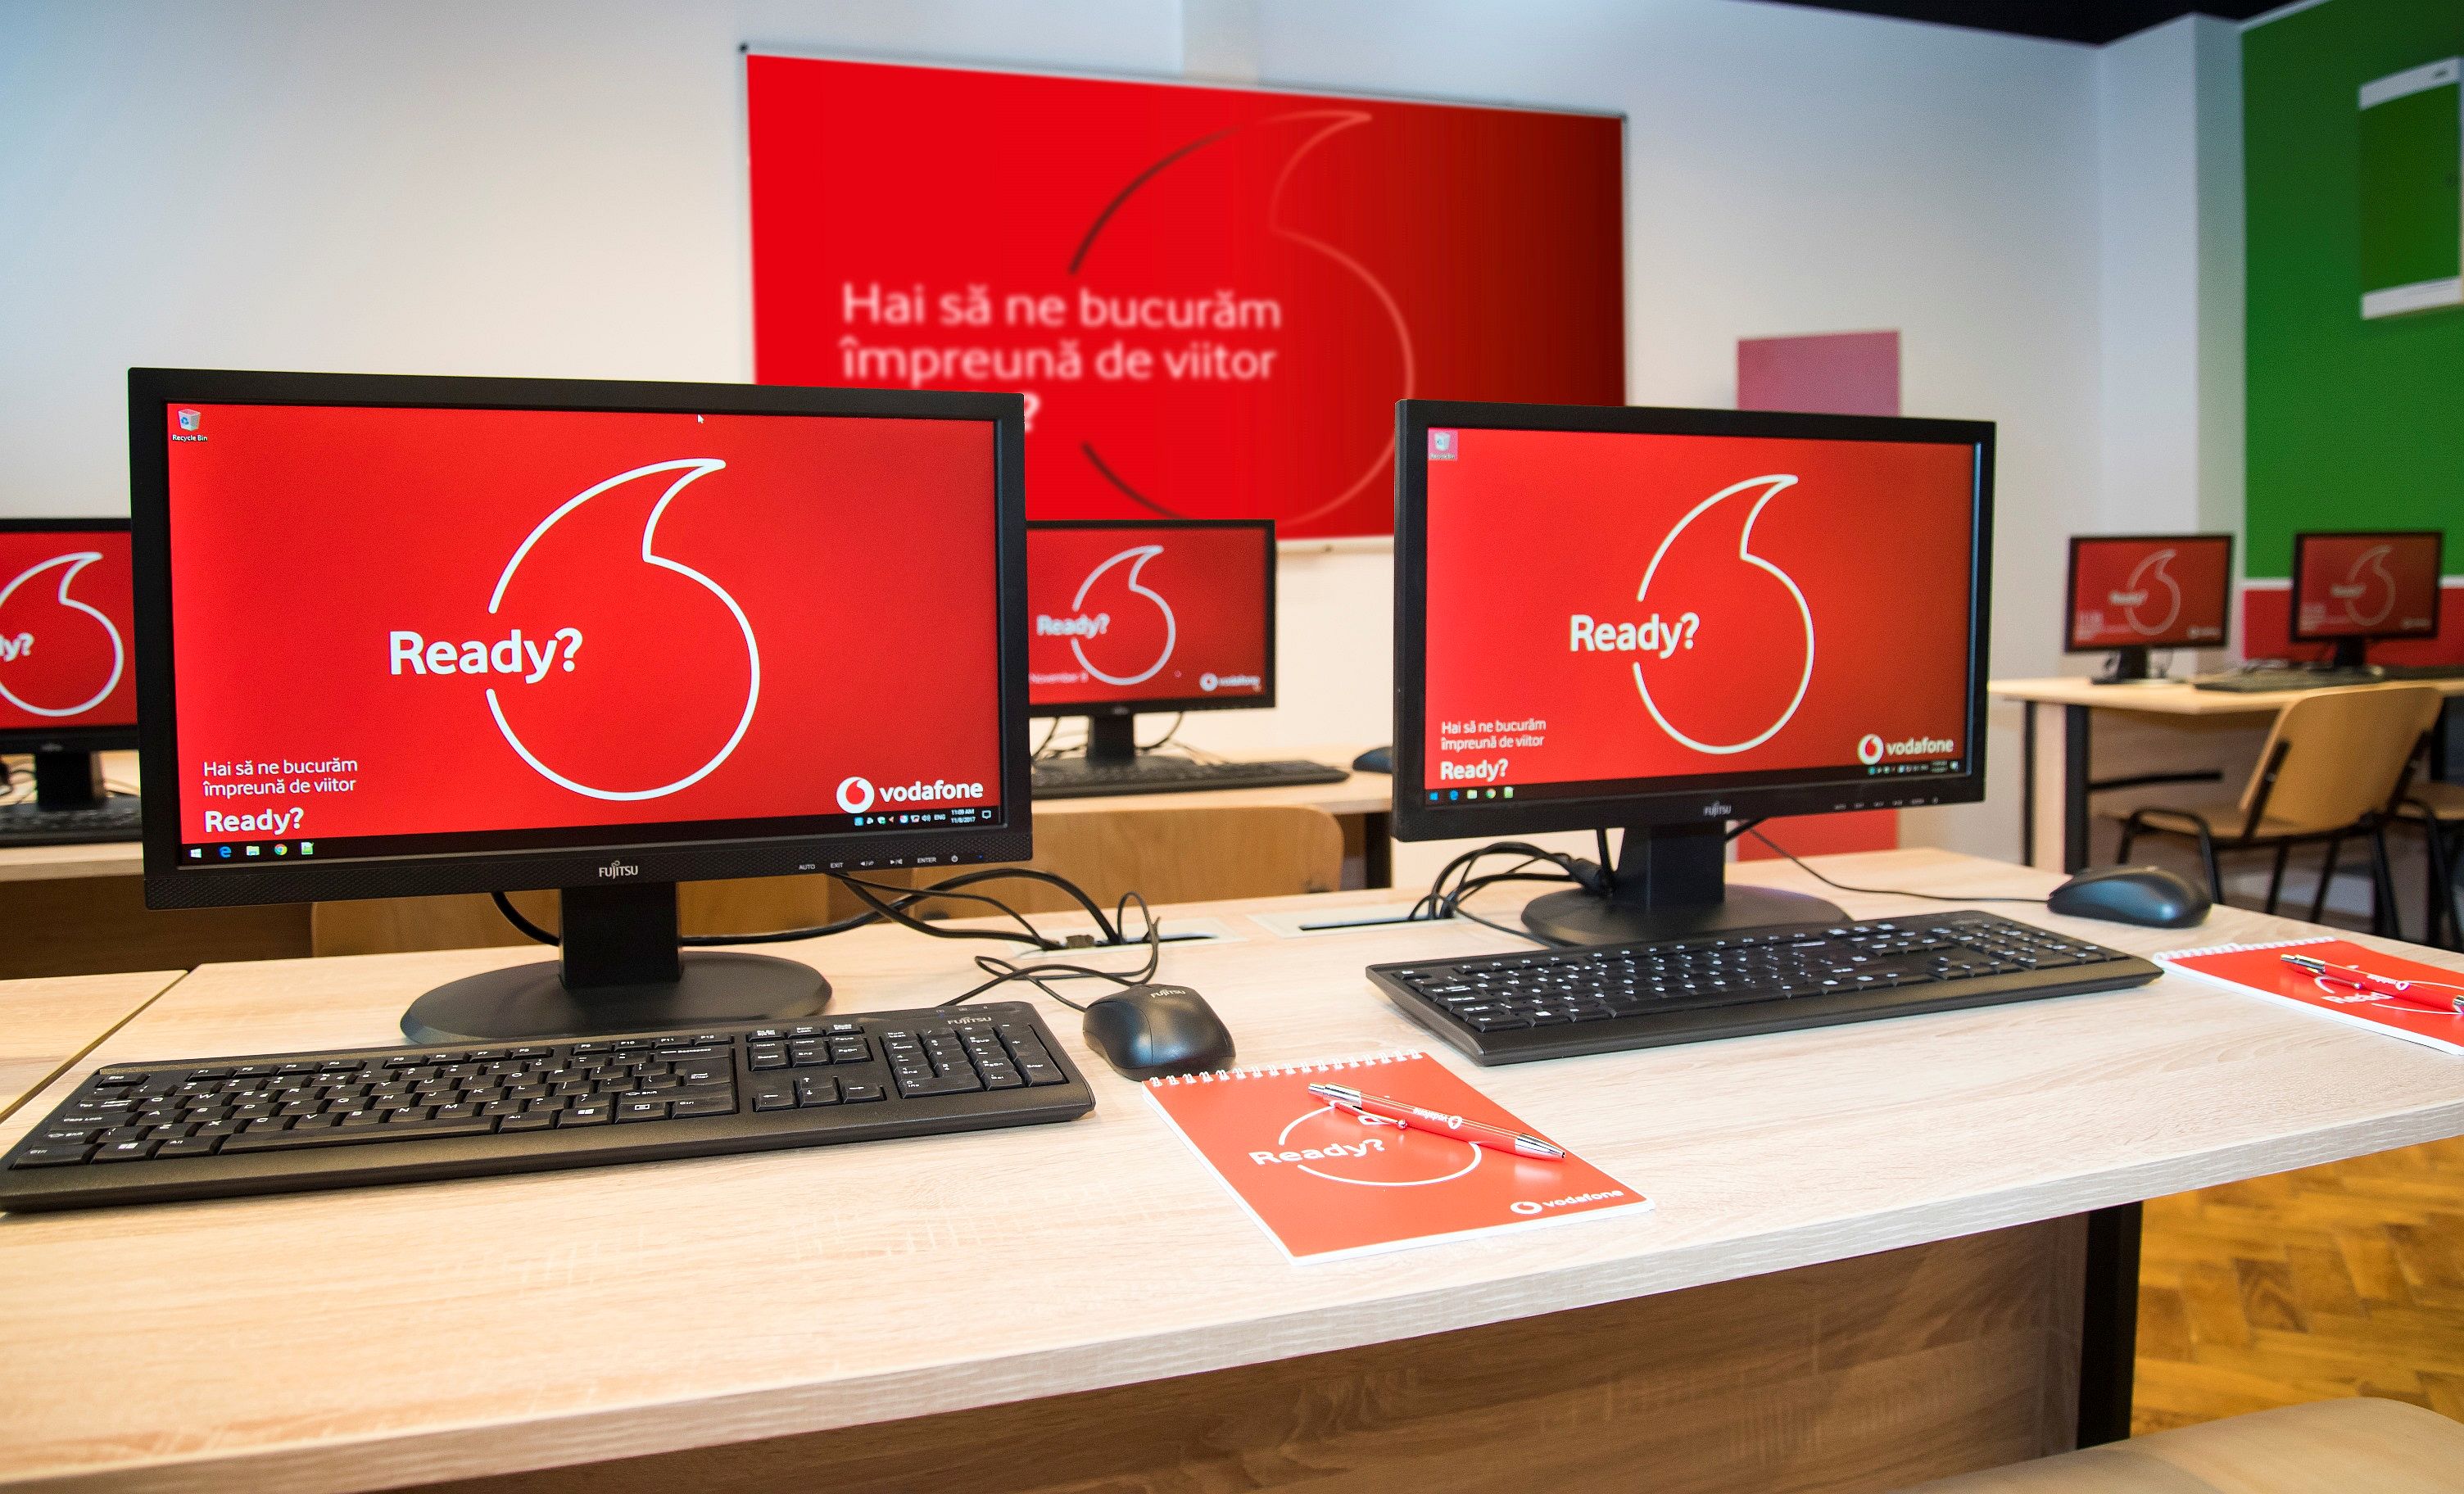 Vodafone România și ASE București inaugurează noul laborator de informatică din clădirea „Virgil Madgearu”